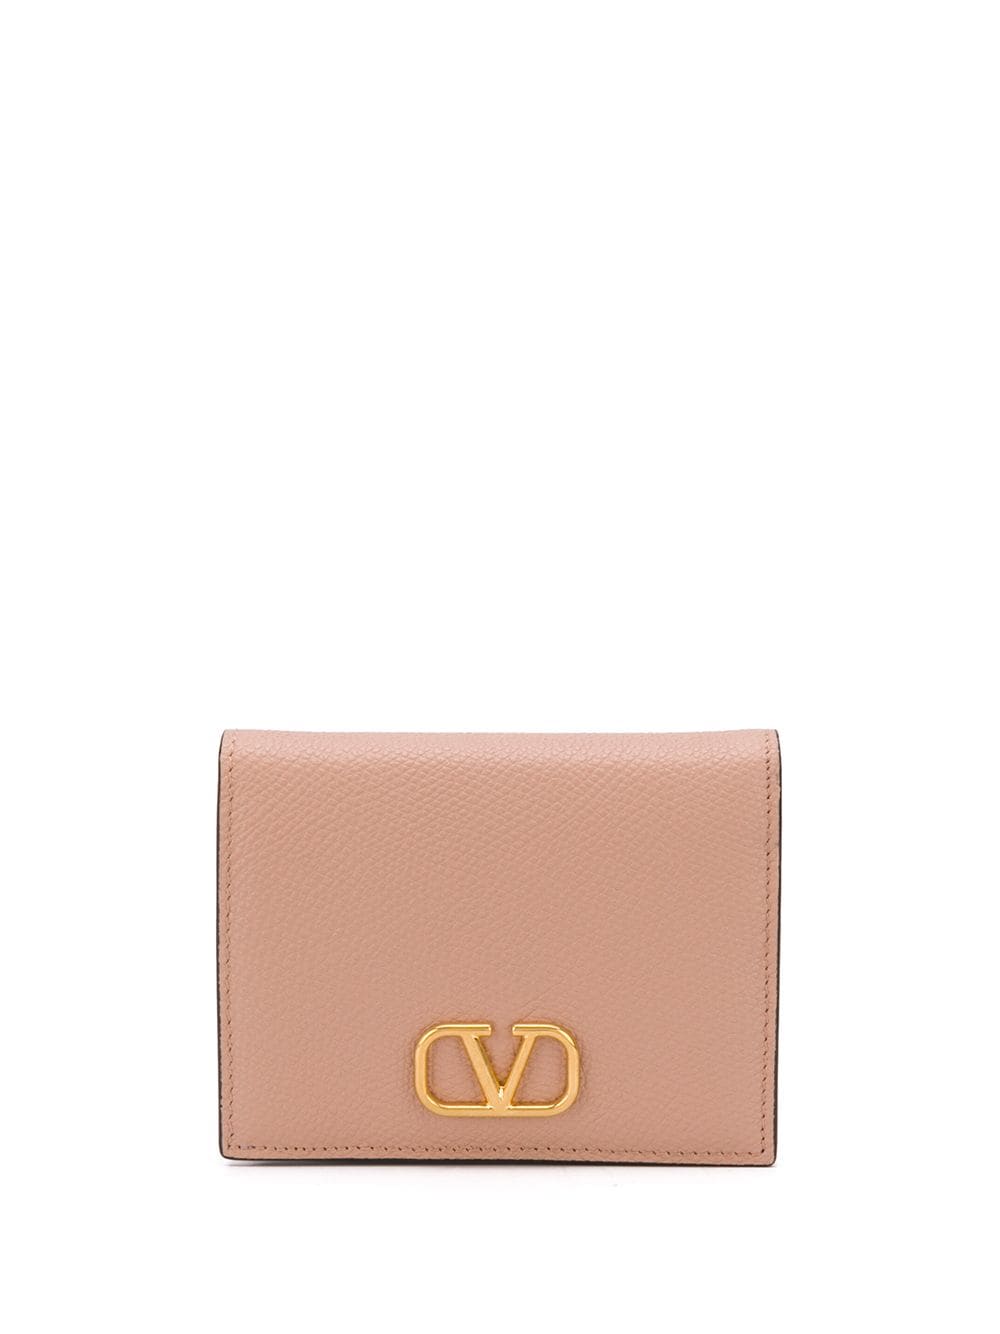 Valentino Garavani VLogo Signature compact leather wallet - Neutrals von Valentino Garavani